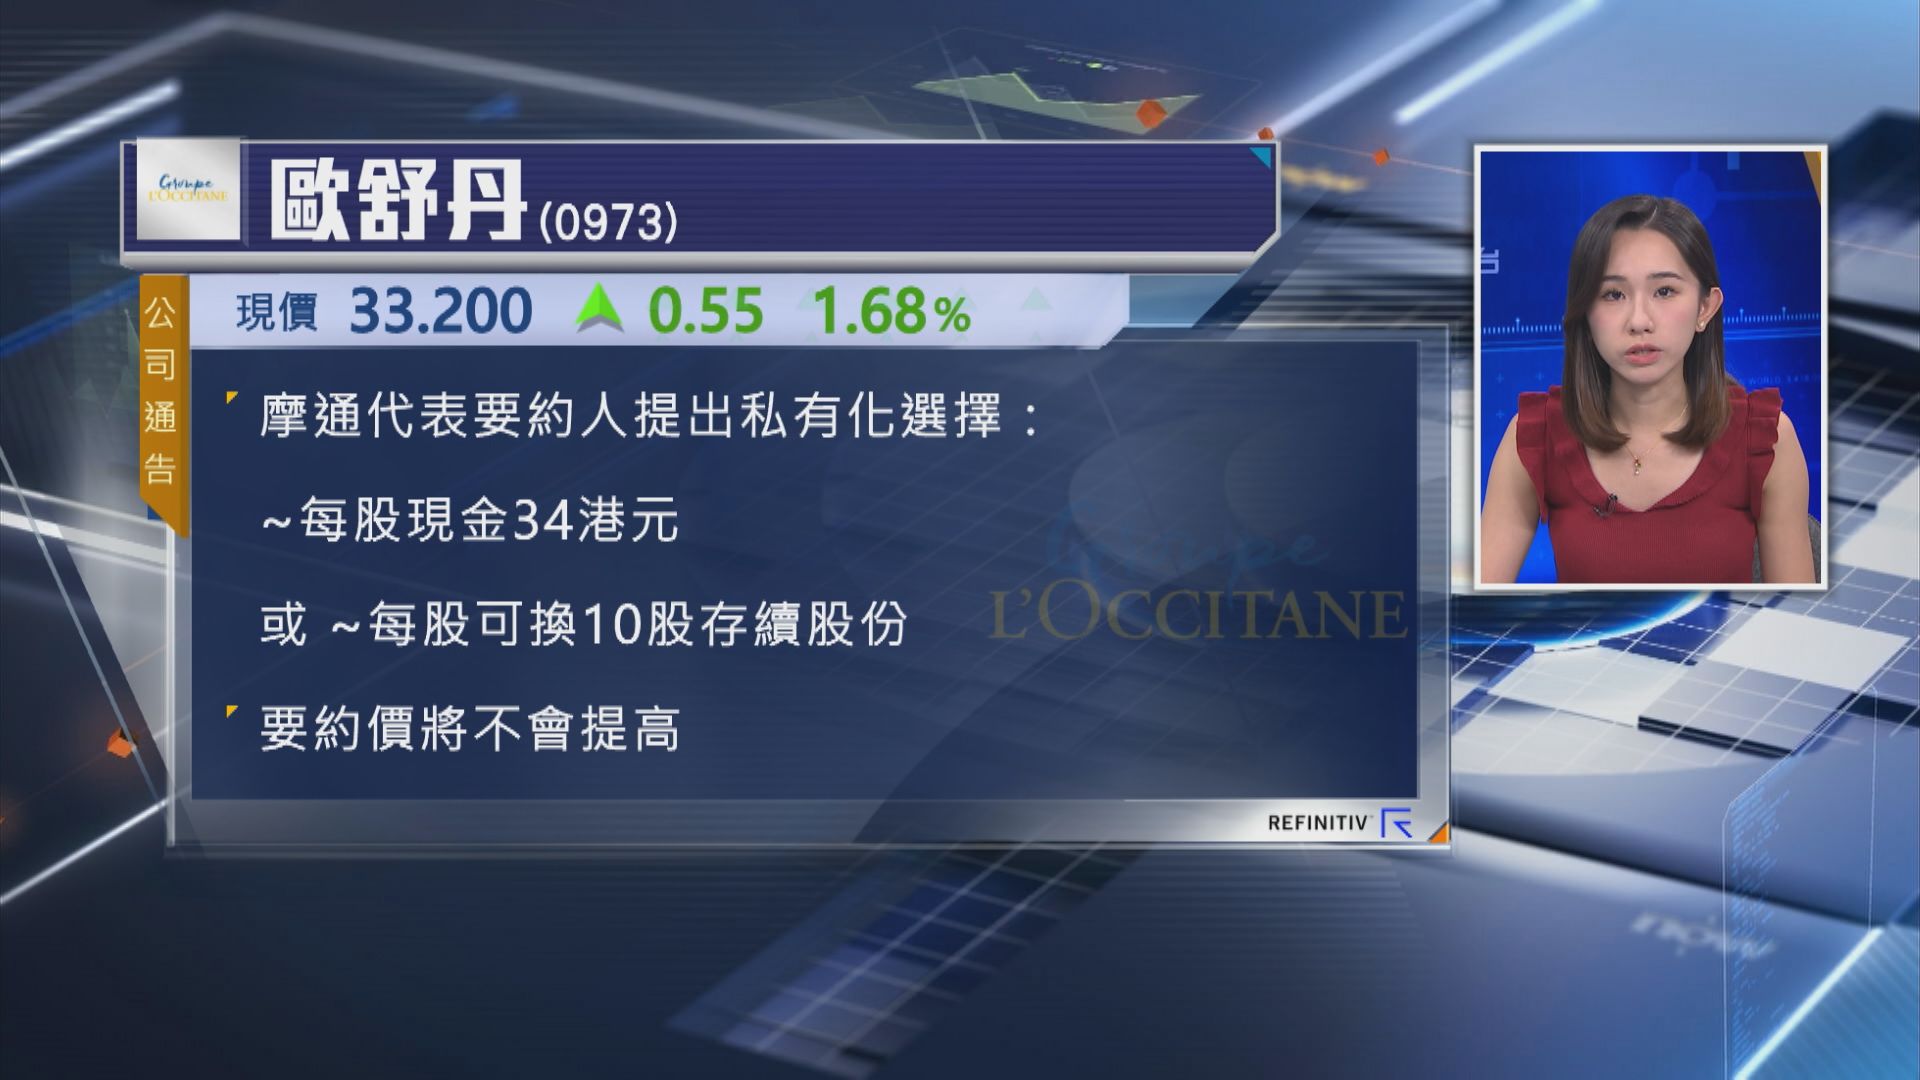 【畀小股東2揀1】歐舒丹主席提新私有建議 午後復牌曾升逾2%